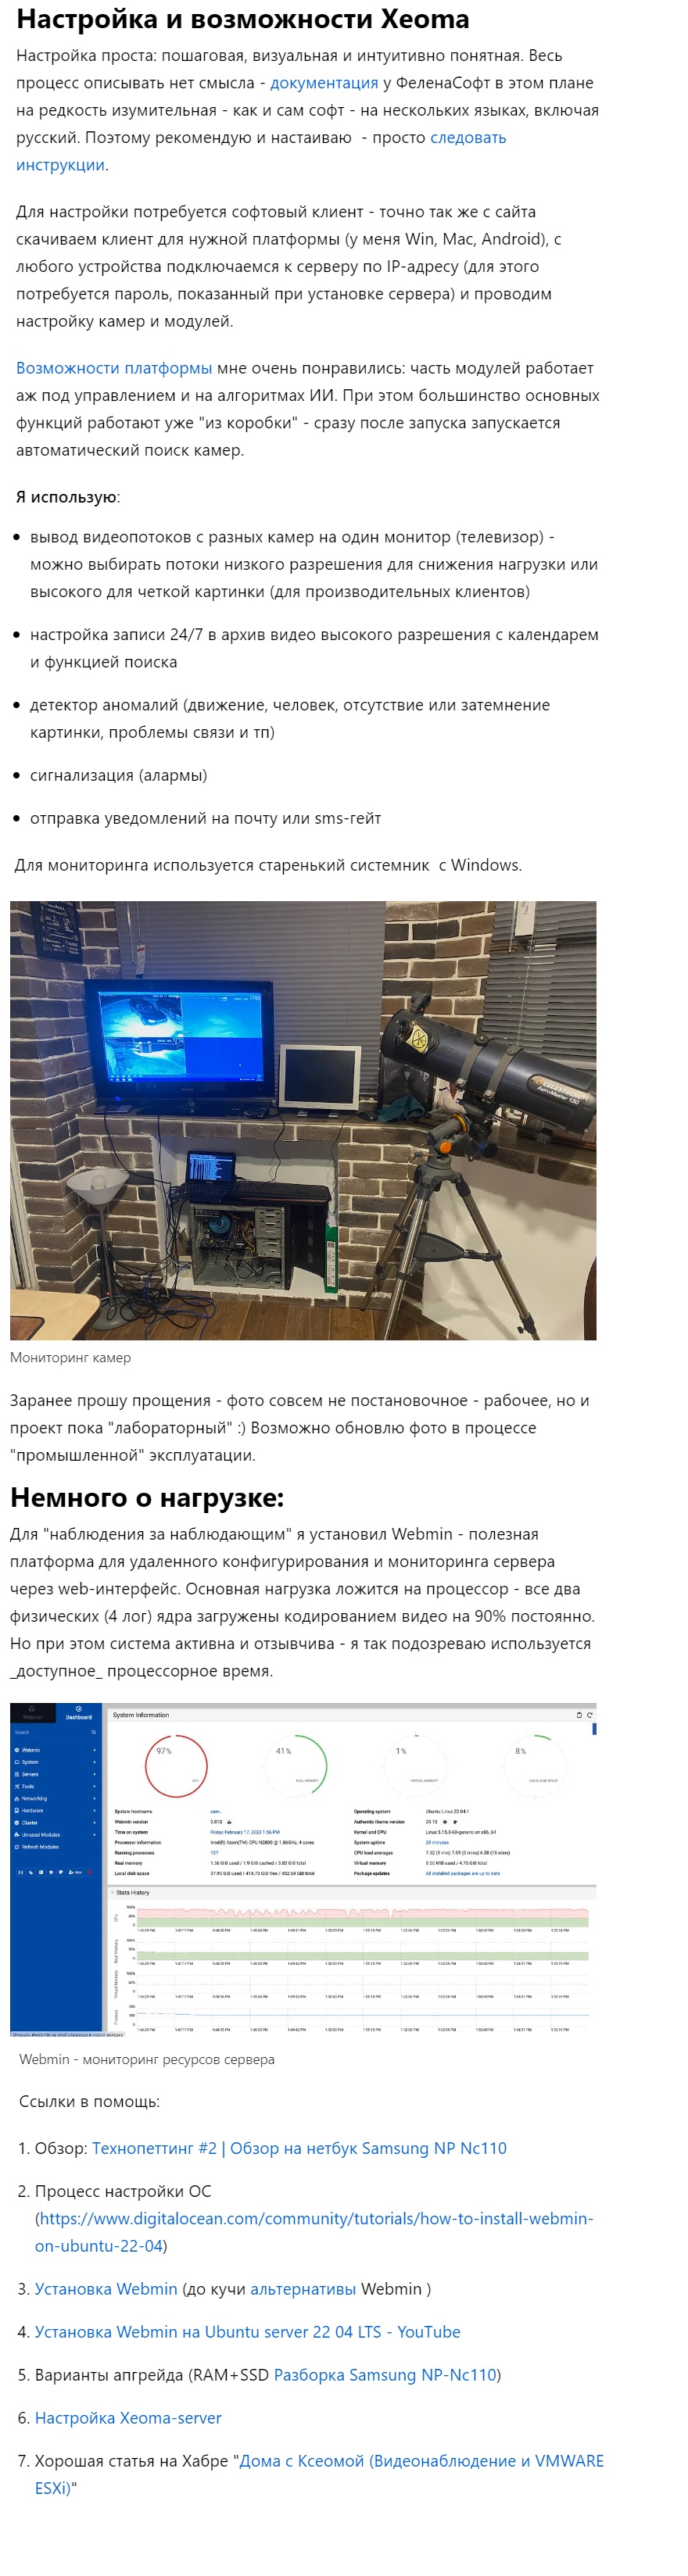 Домашний сервер видеонаблюдения Xeoma на нетбуке